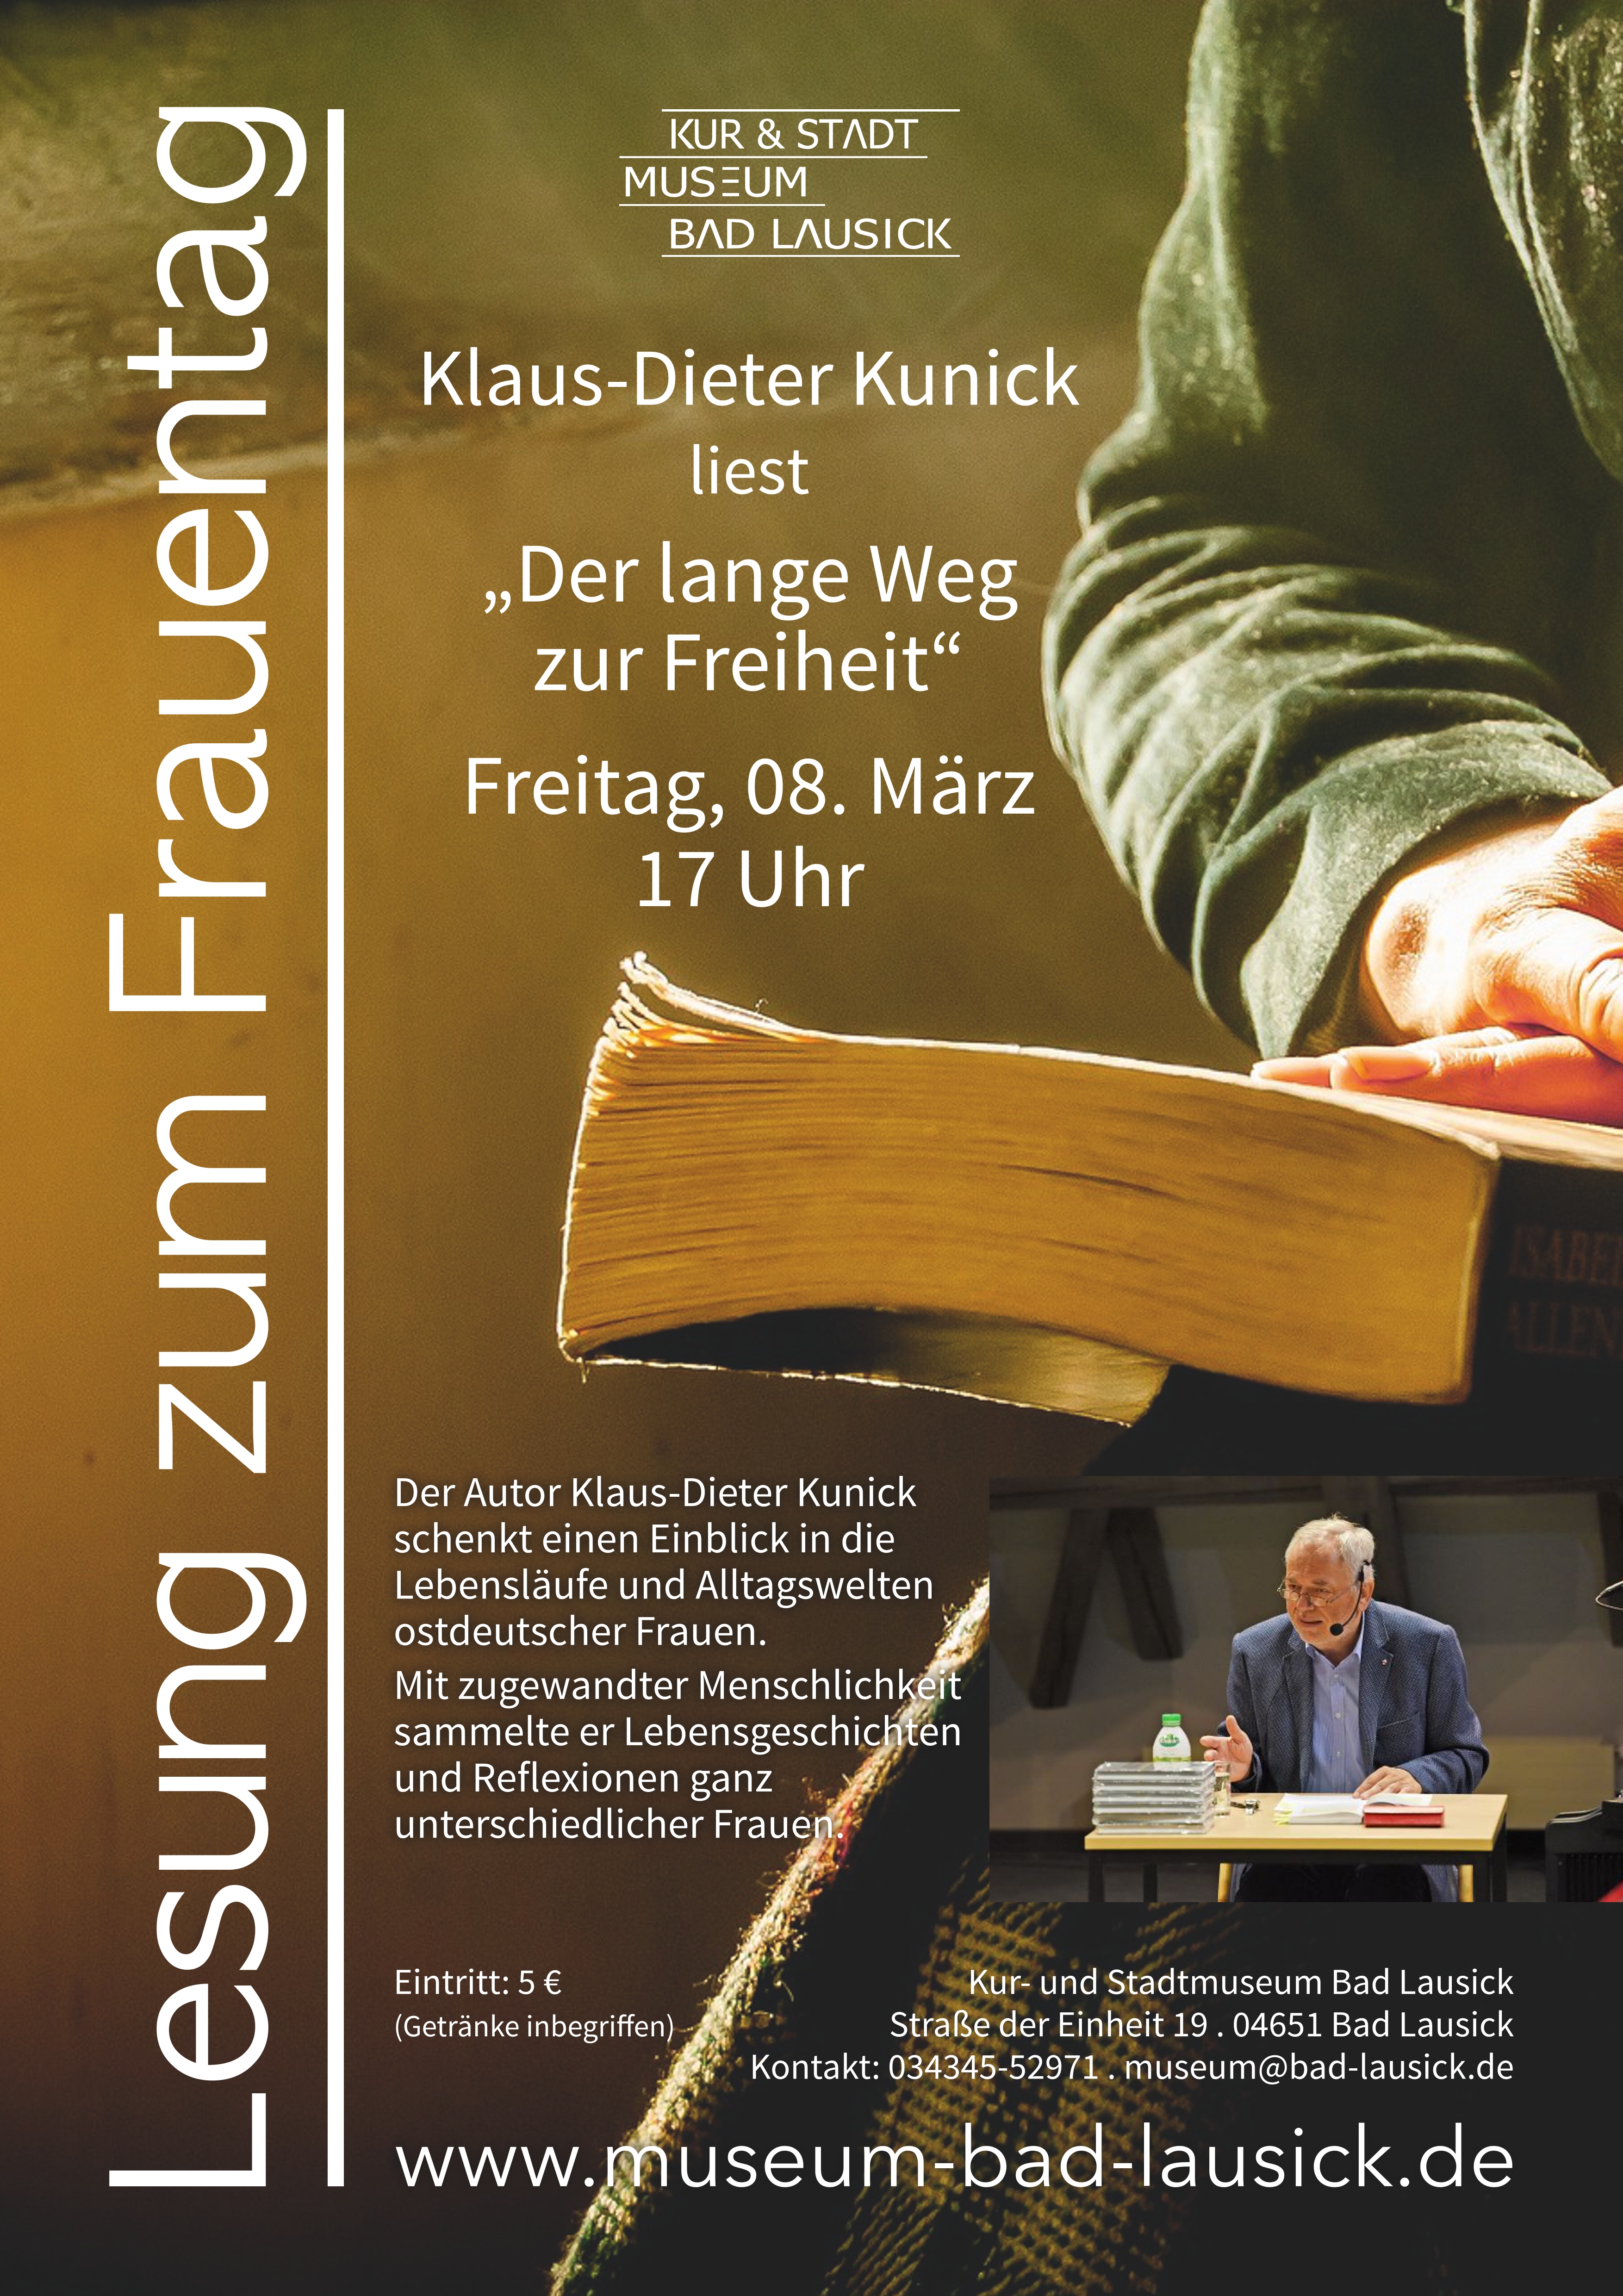 Plakatmotiv ist die Nahaufnahme einer Person, deren Hände auf einem Buch liegen, darunter befindet sich ein kleines Foto des Autors Klaus-Dieter Kunick. Daneben sind Veranstaltungstitel, -zeit und -ort, der Eintrittspreis und ein kurzer Text aufgeführt.